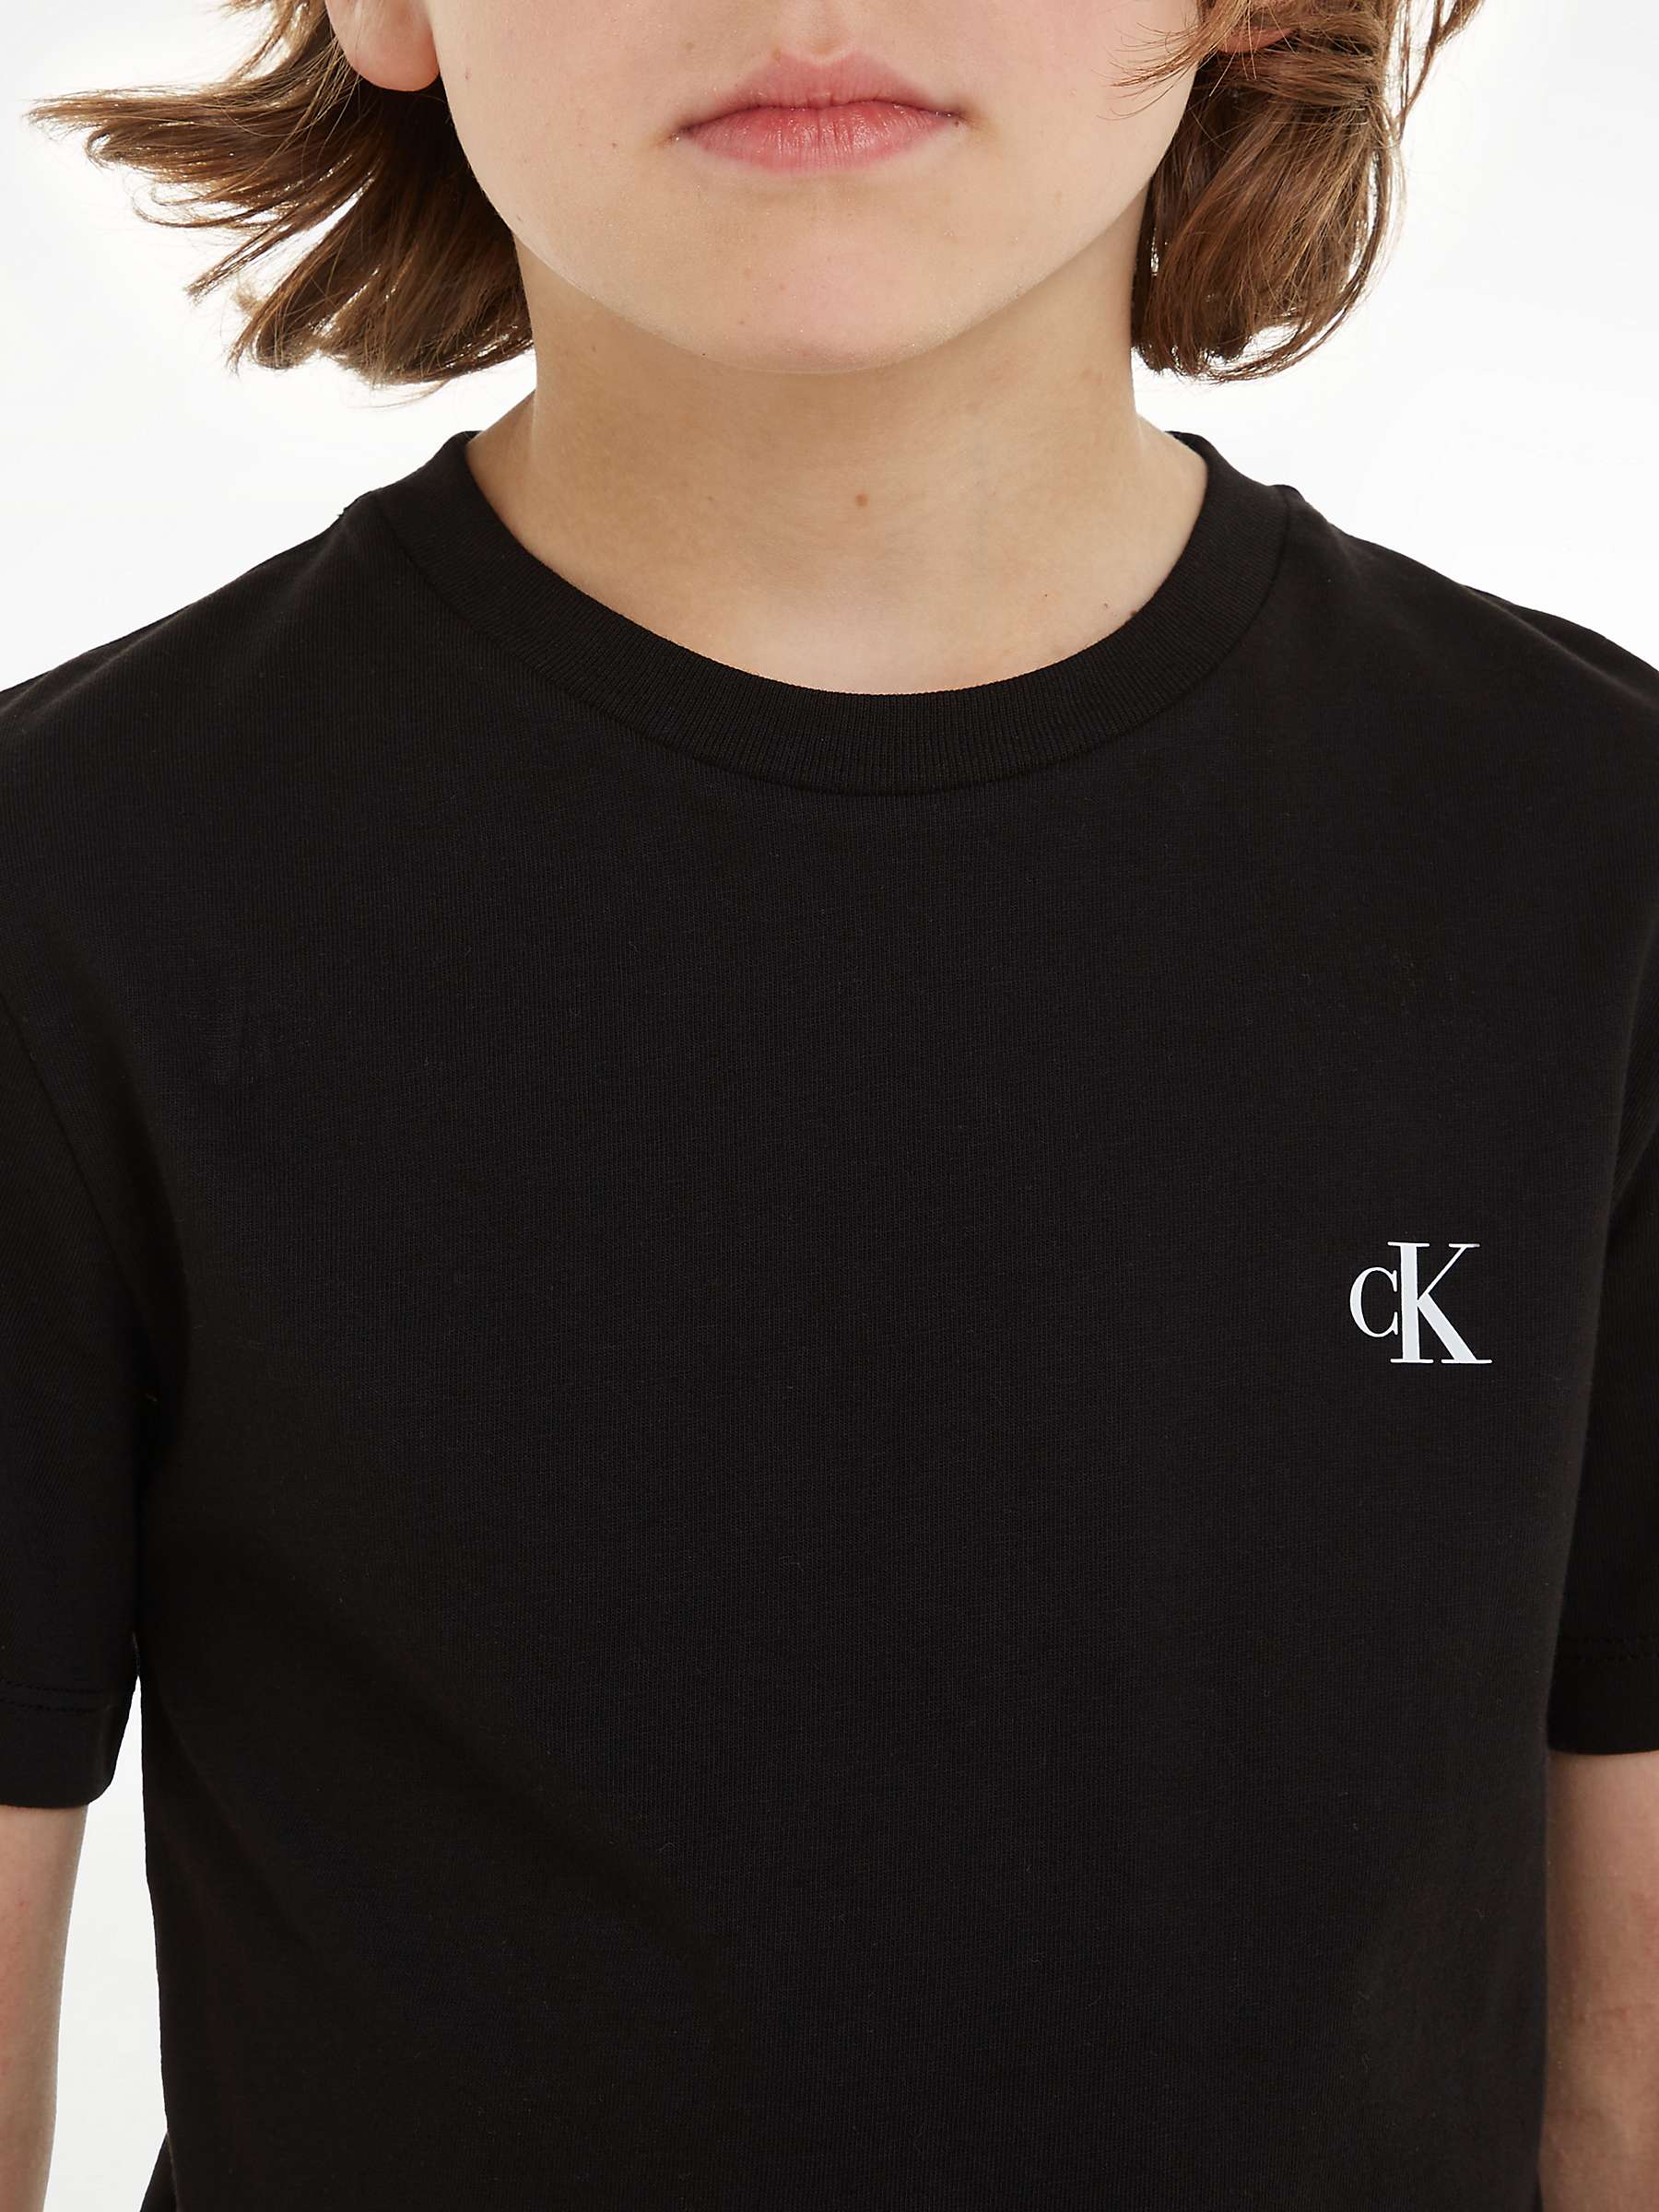 Calvin Klein Kids' Cotton Monogram Short Sleeve T-Shirts, Pack of 2, Keepsake  Blue/Ck Black at John Lewis & Partners